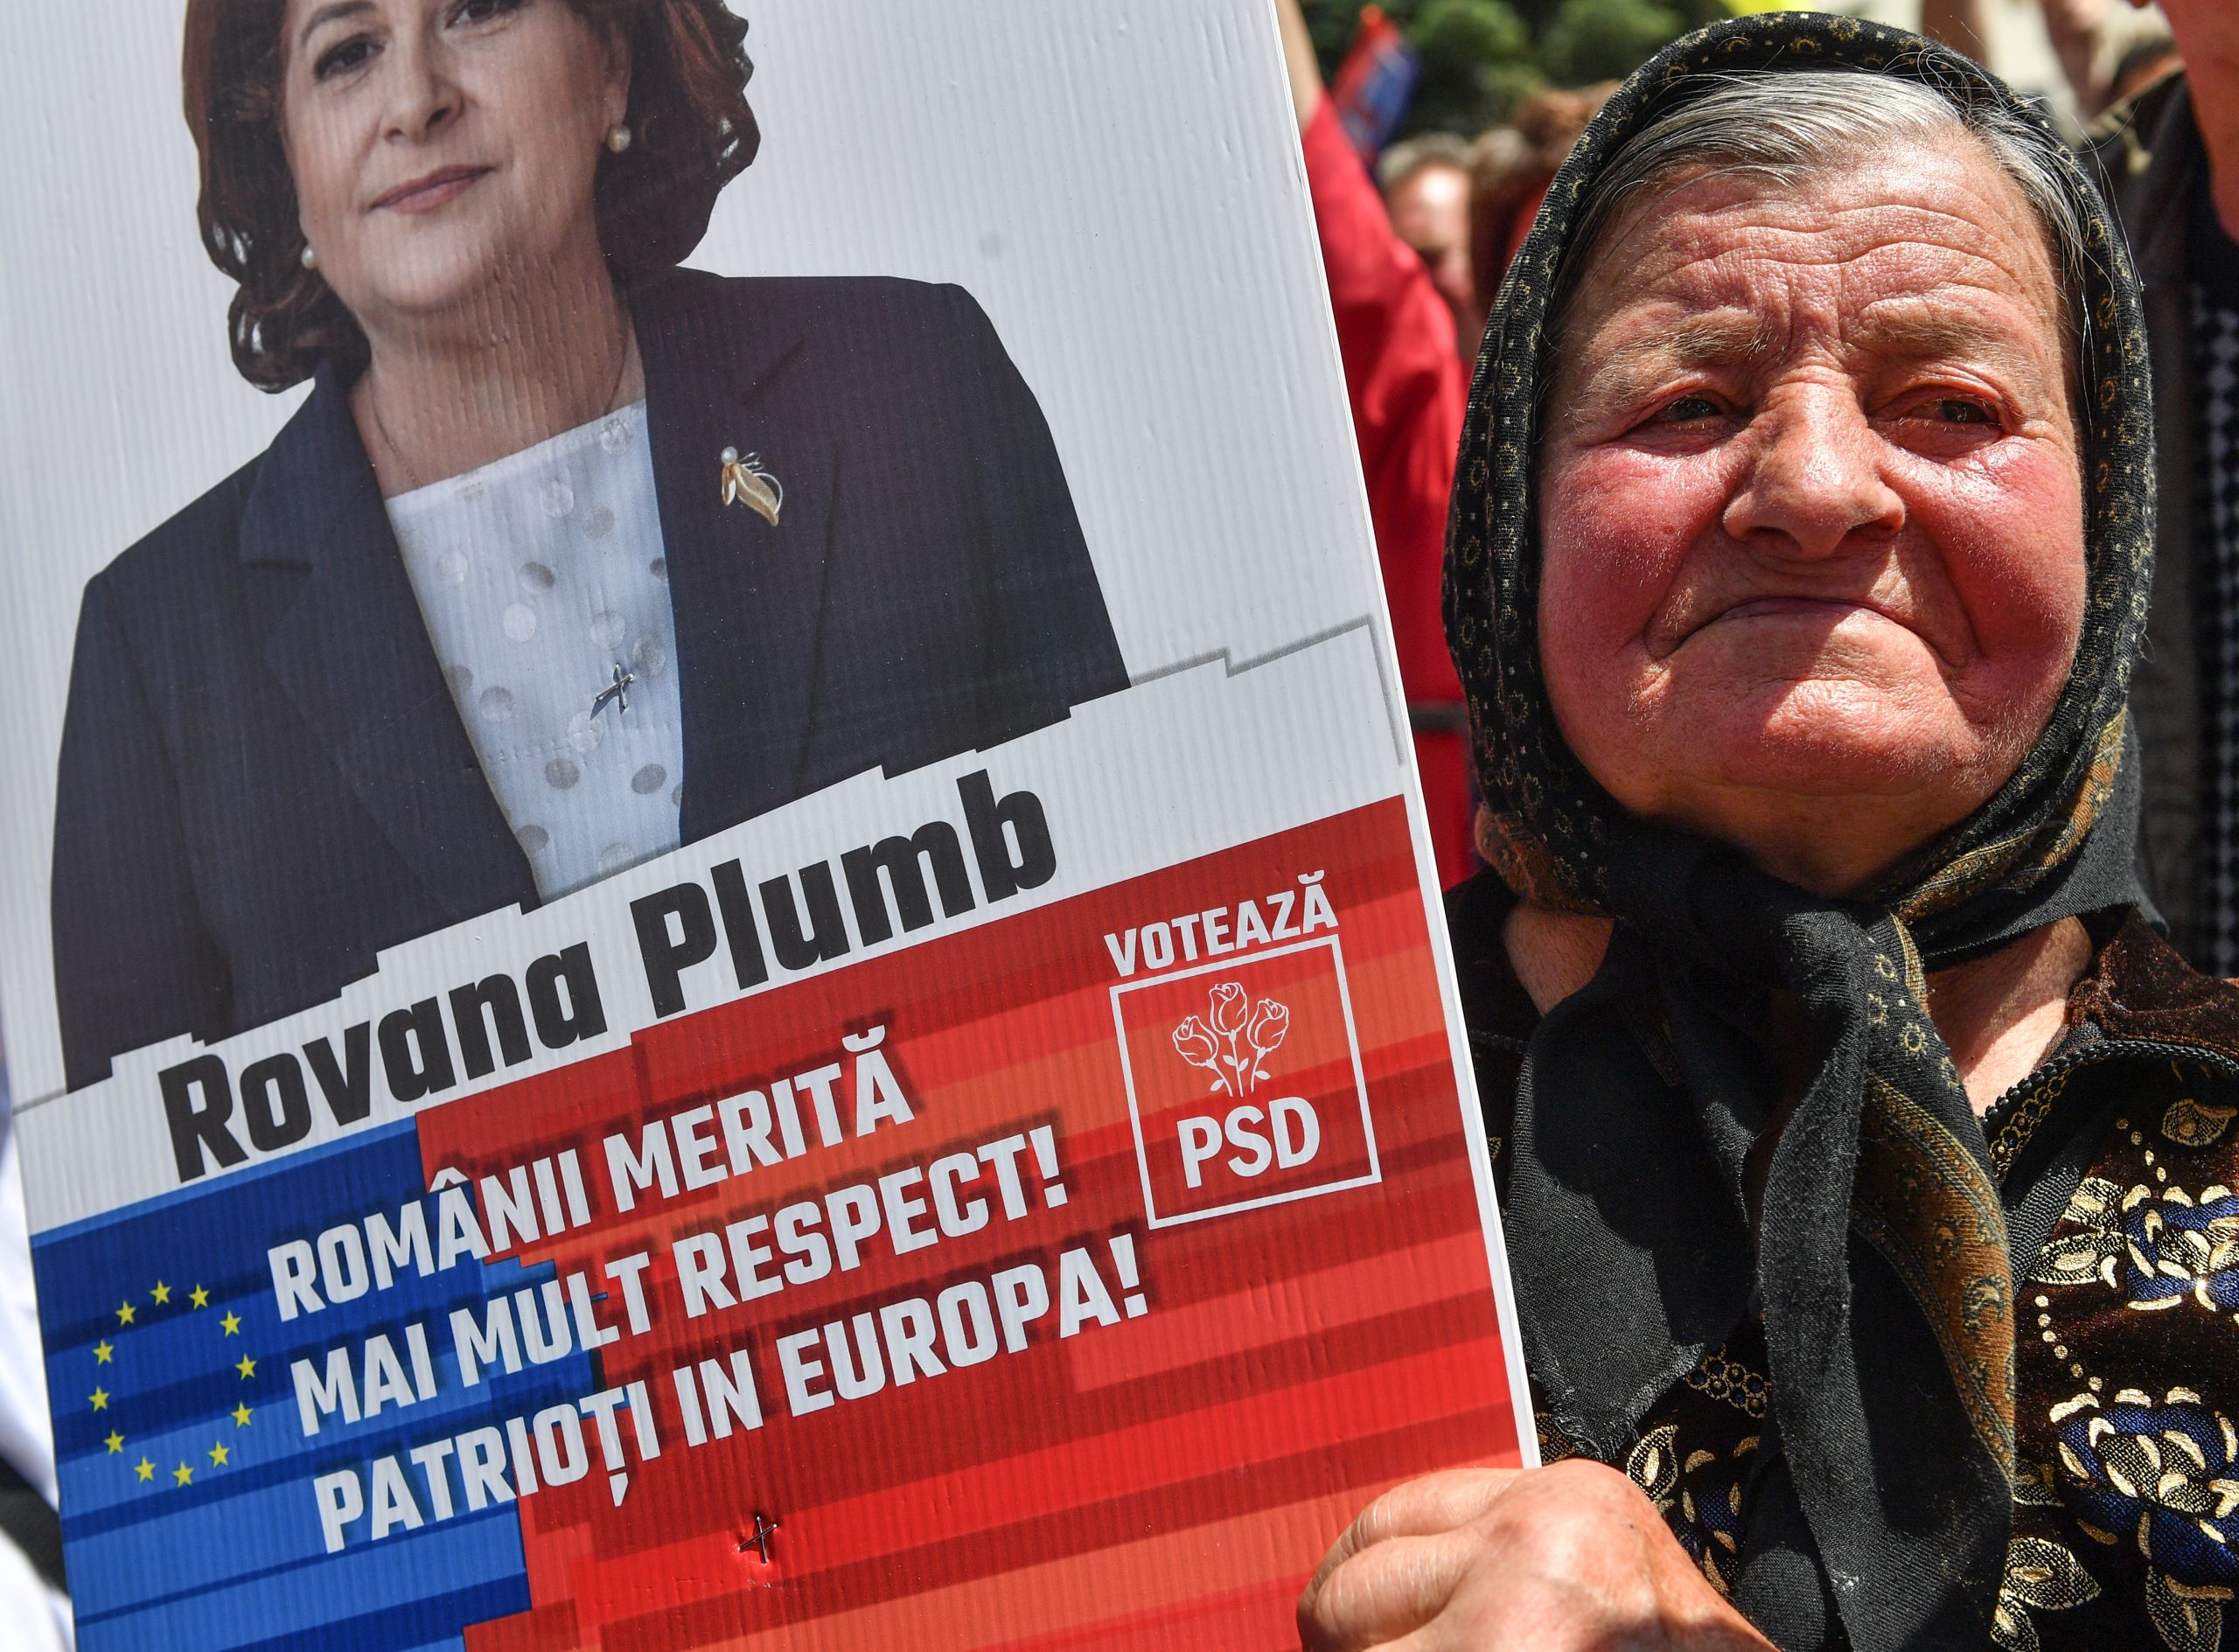 'Roemenië verdient meer respect! Patriotten in Europa!' zo werd geadverteerd voor de Roemeense Rovana Plumb, de topkandidaat voor Europa van de Roemeense sociaaldemocraten.